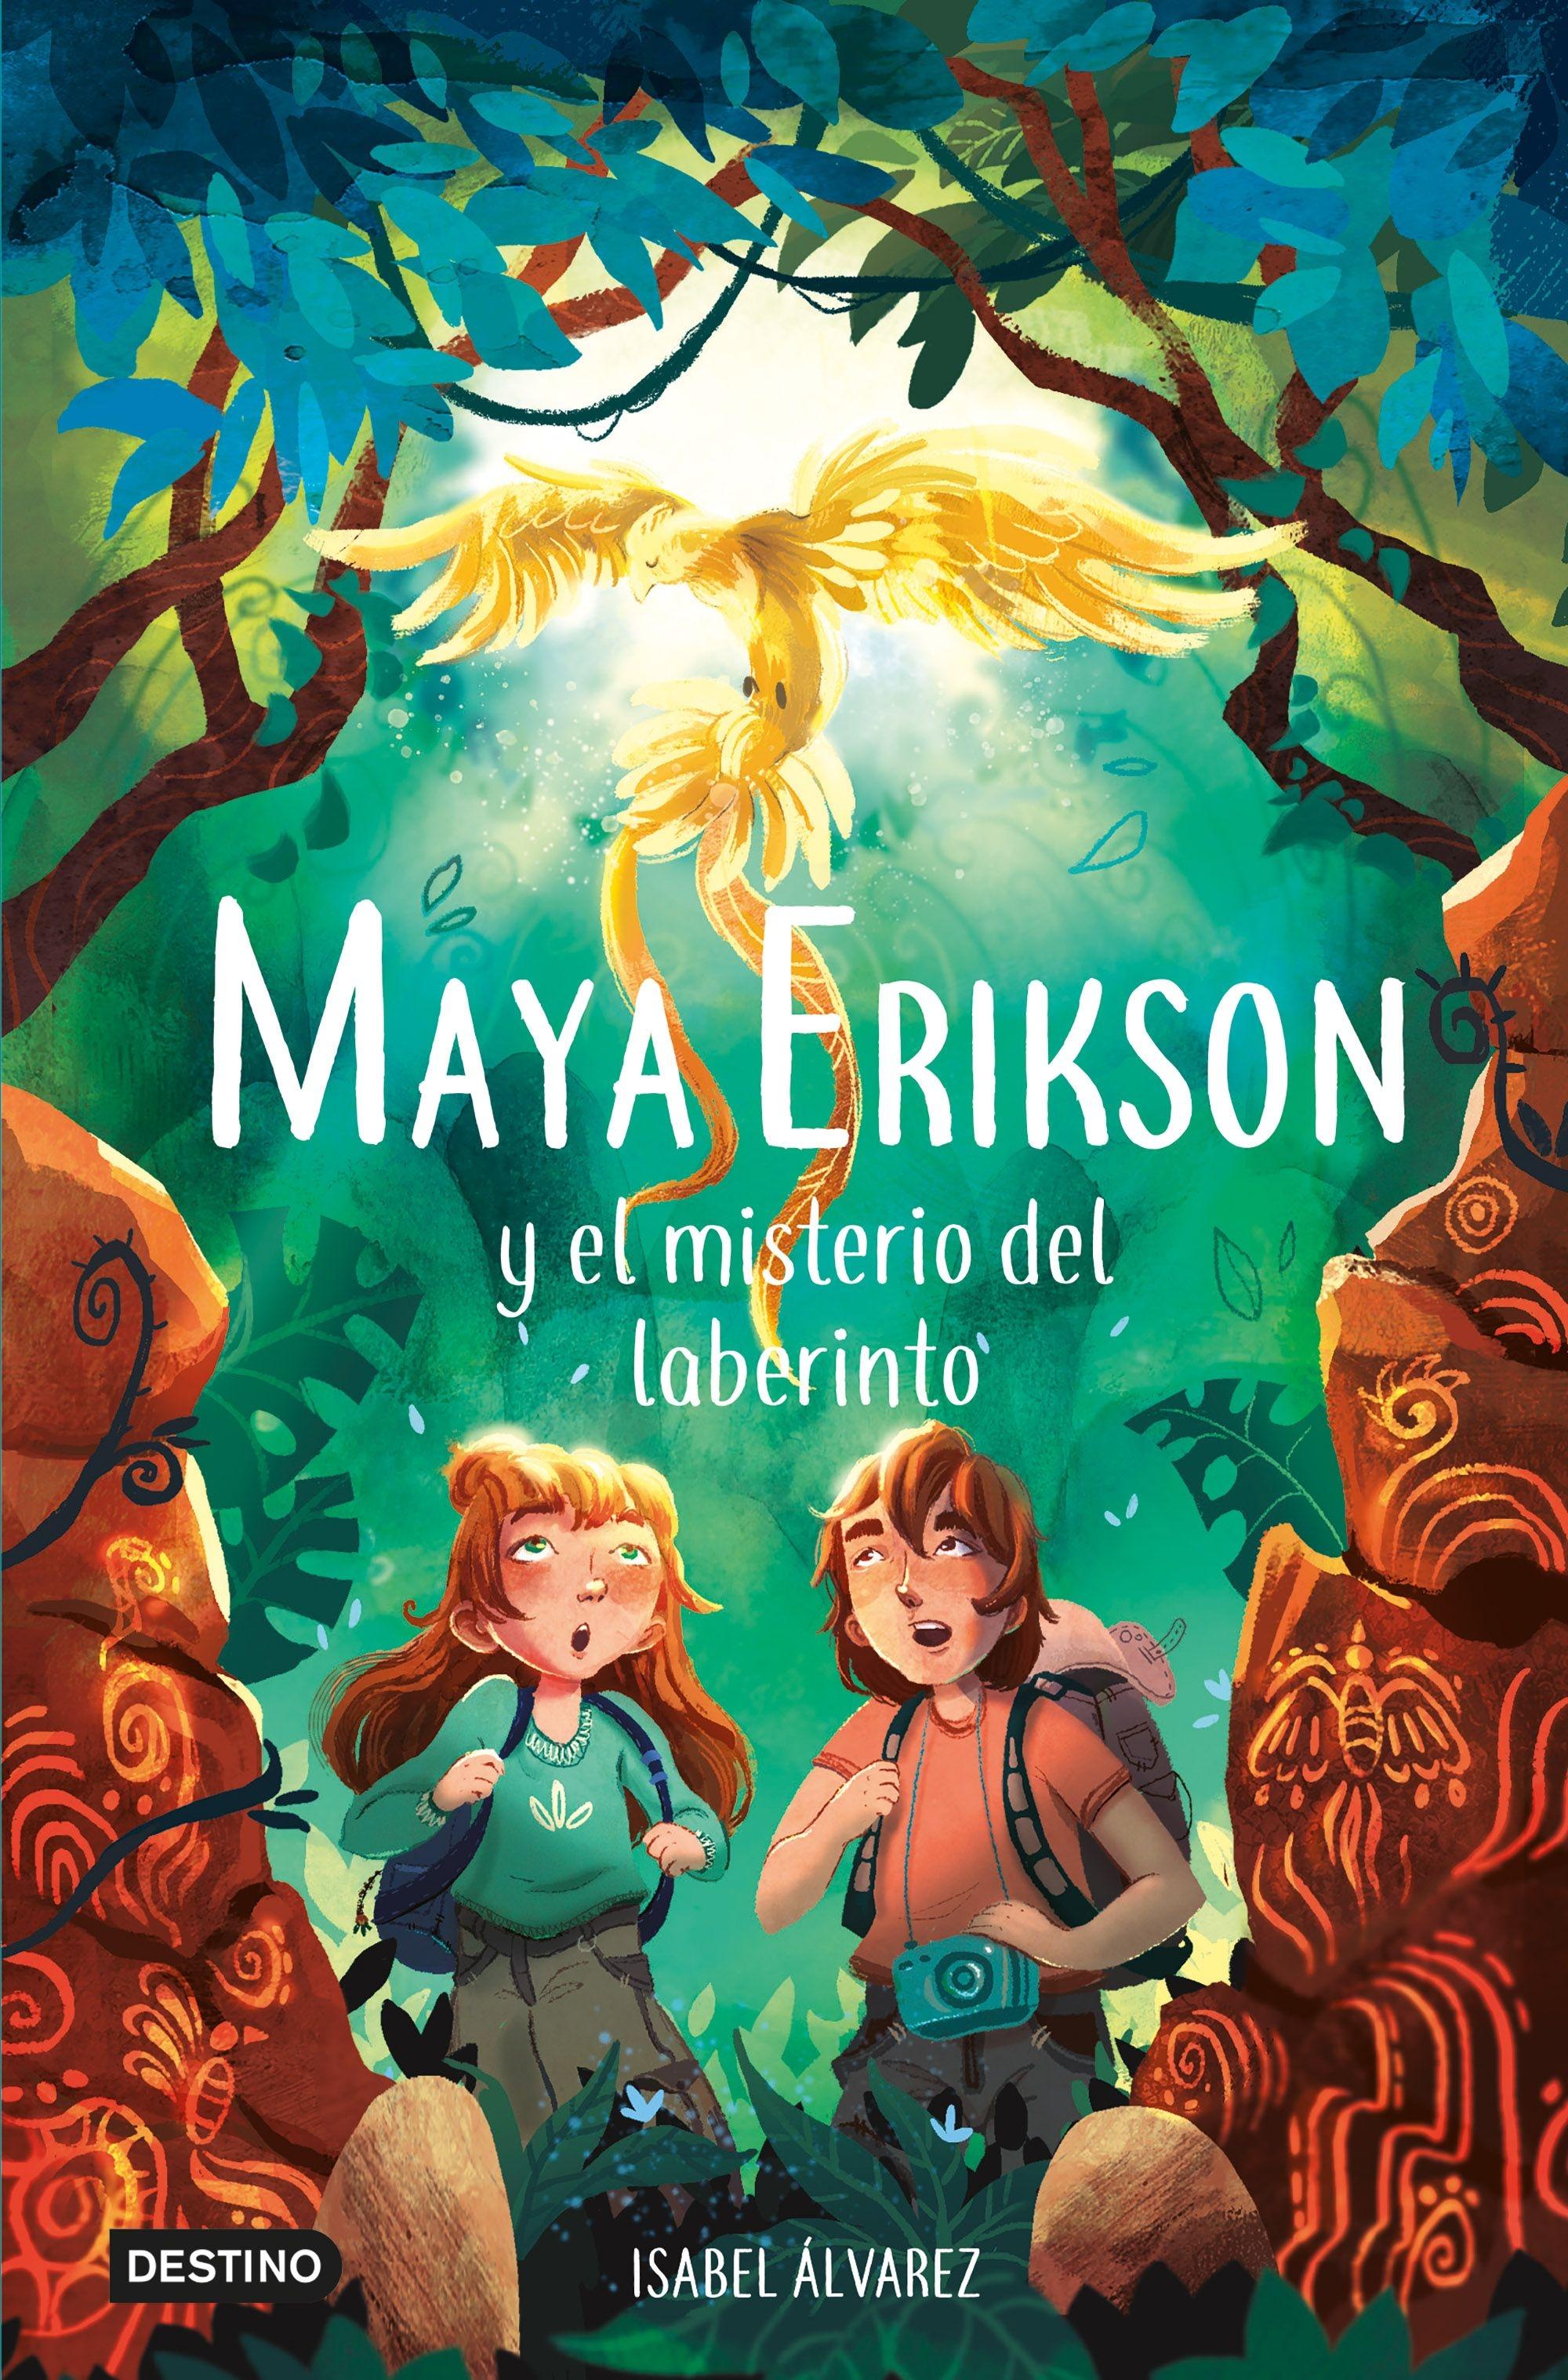 Maya Erikson 1 "El misterio del laberinto"